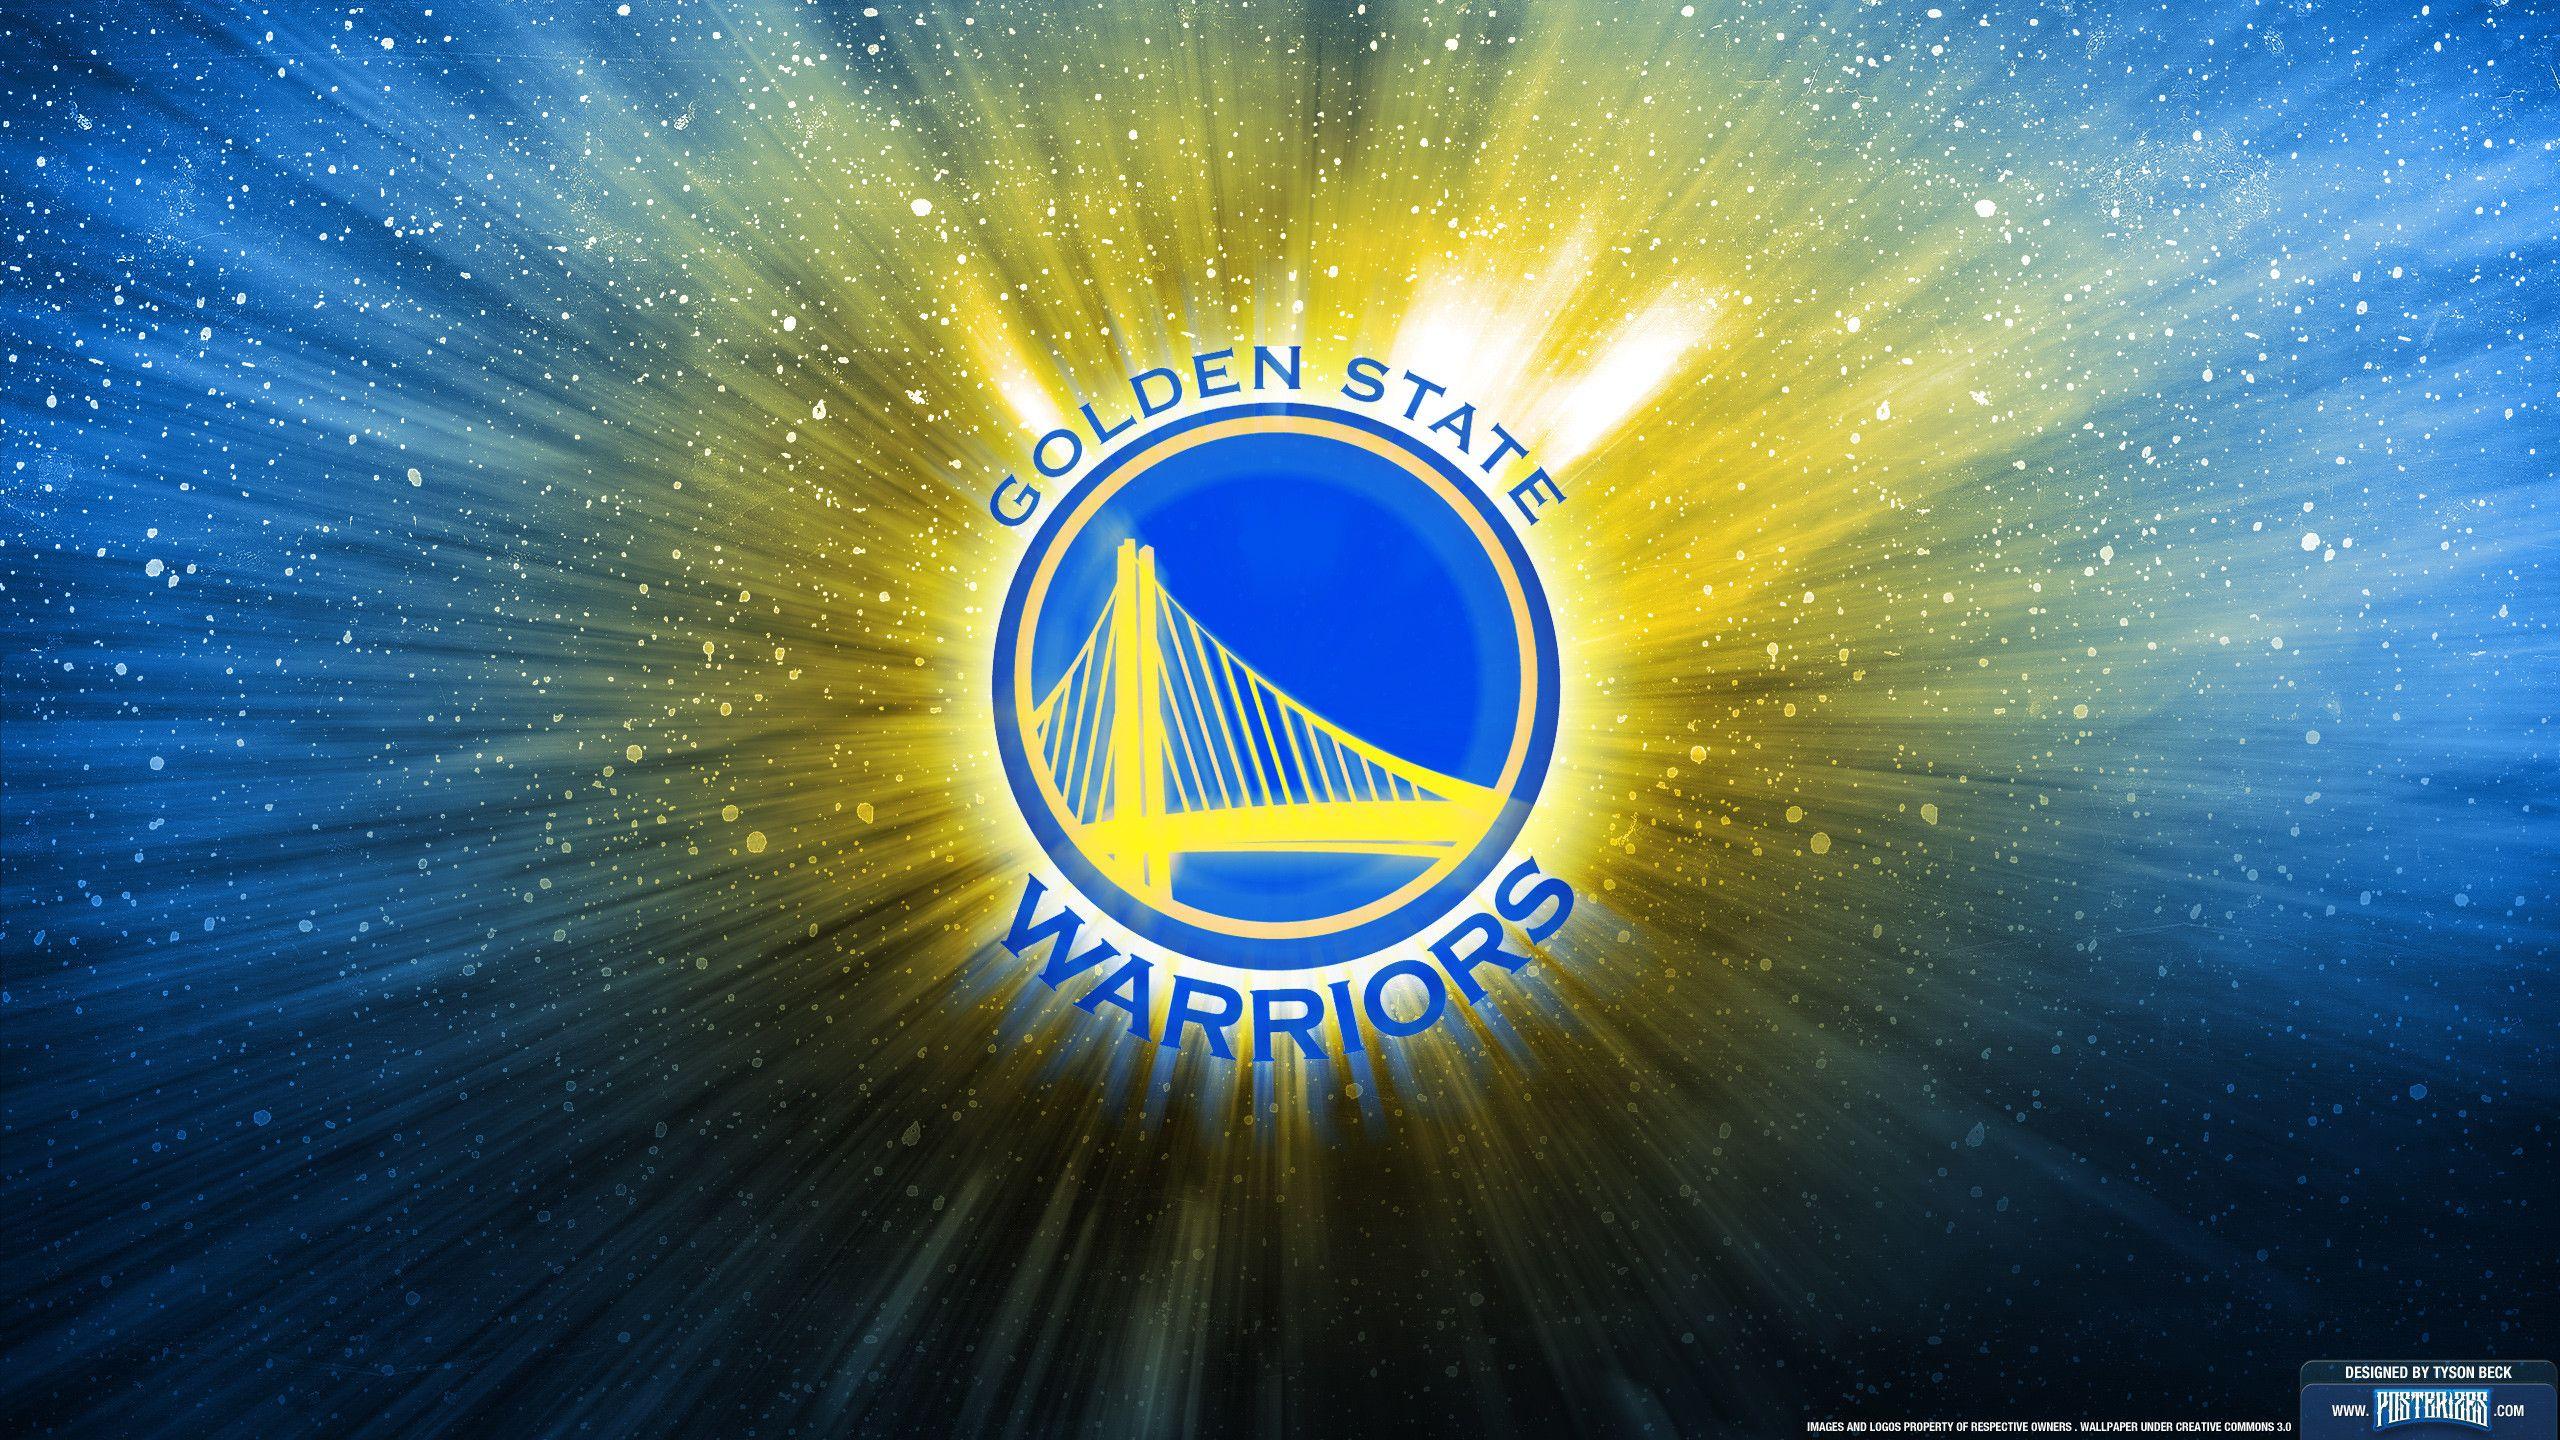 Golden State Warriors Basketball Wallpaper